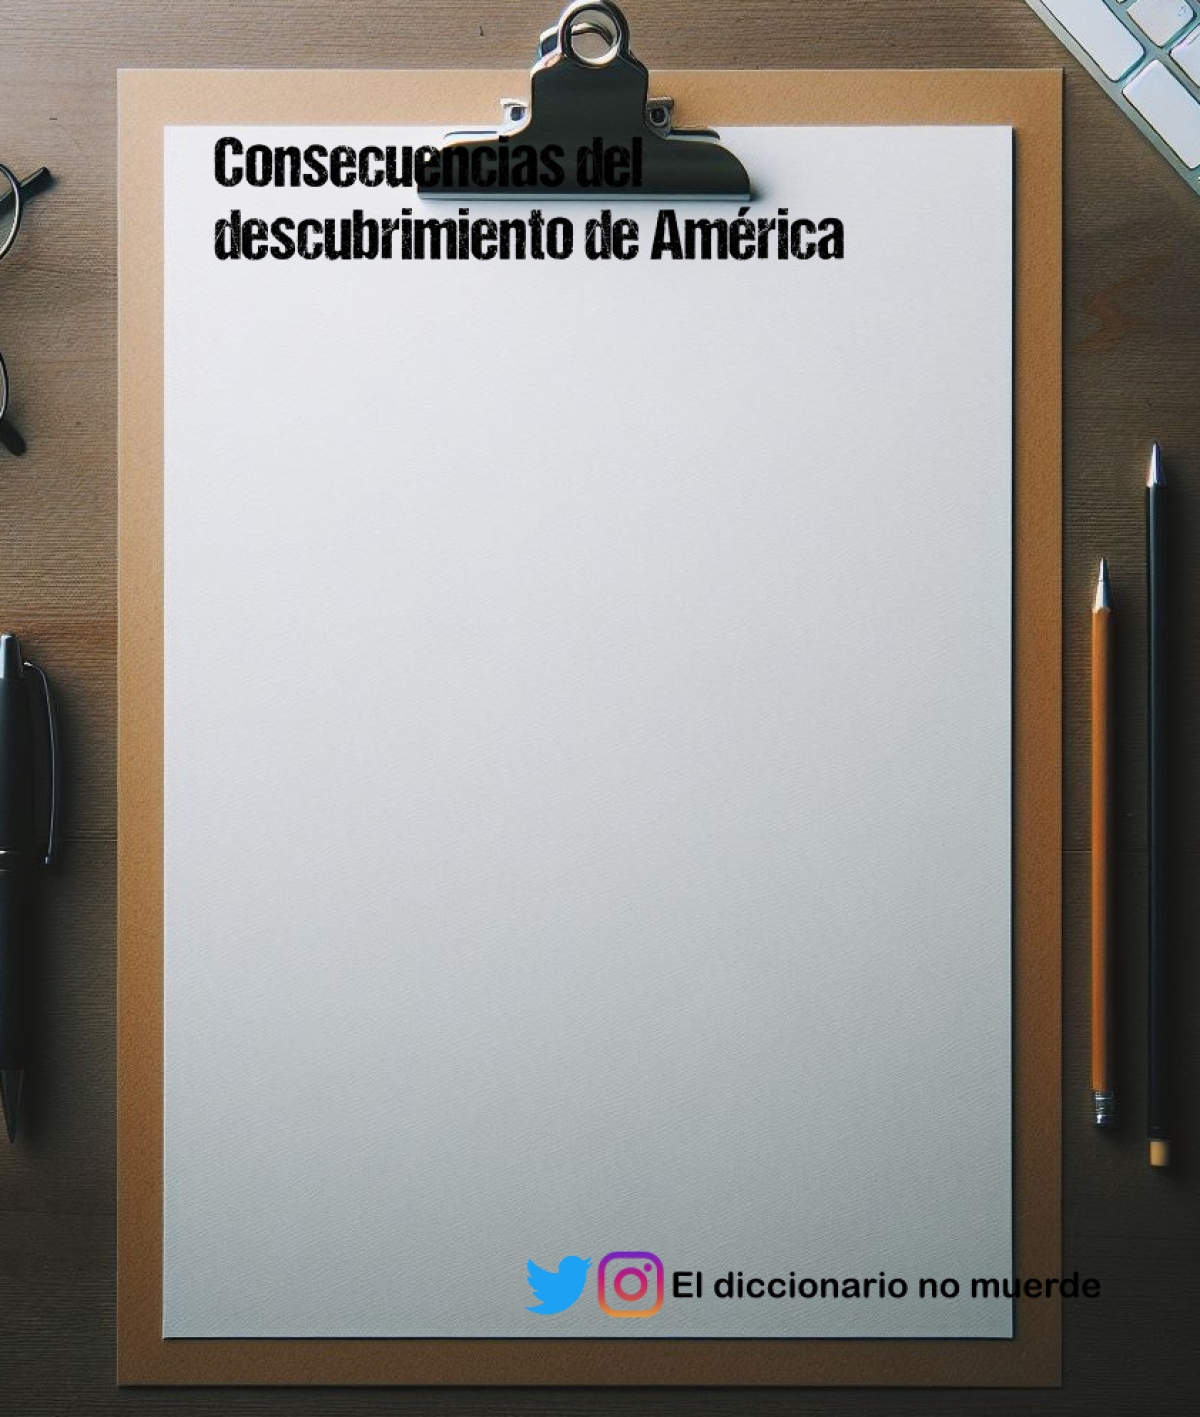 Consecuencias del descubrimiento de América